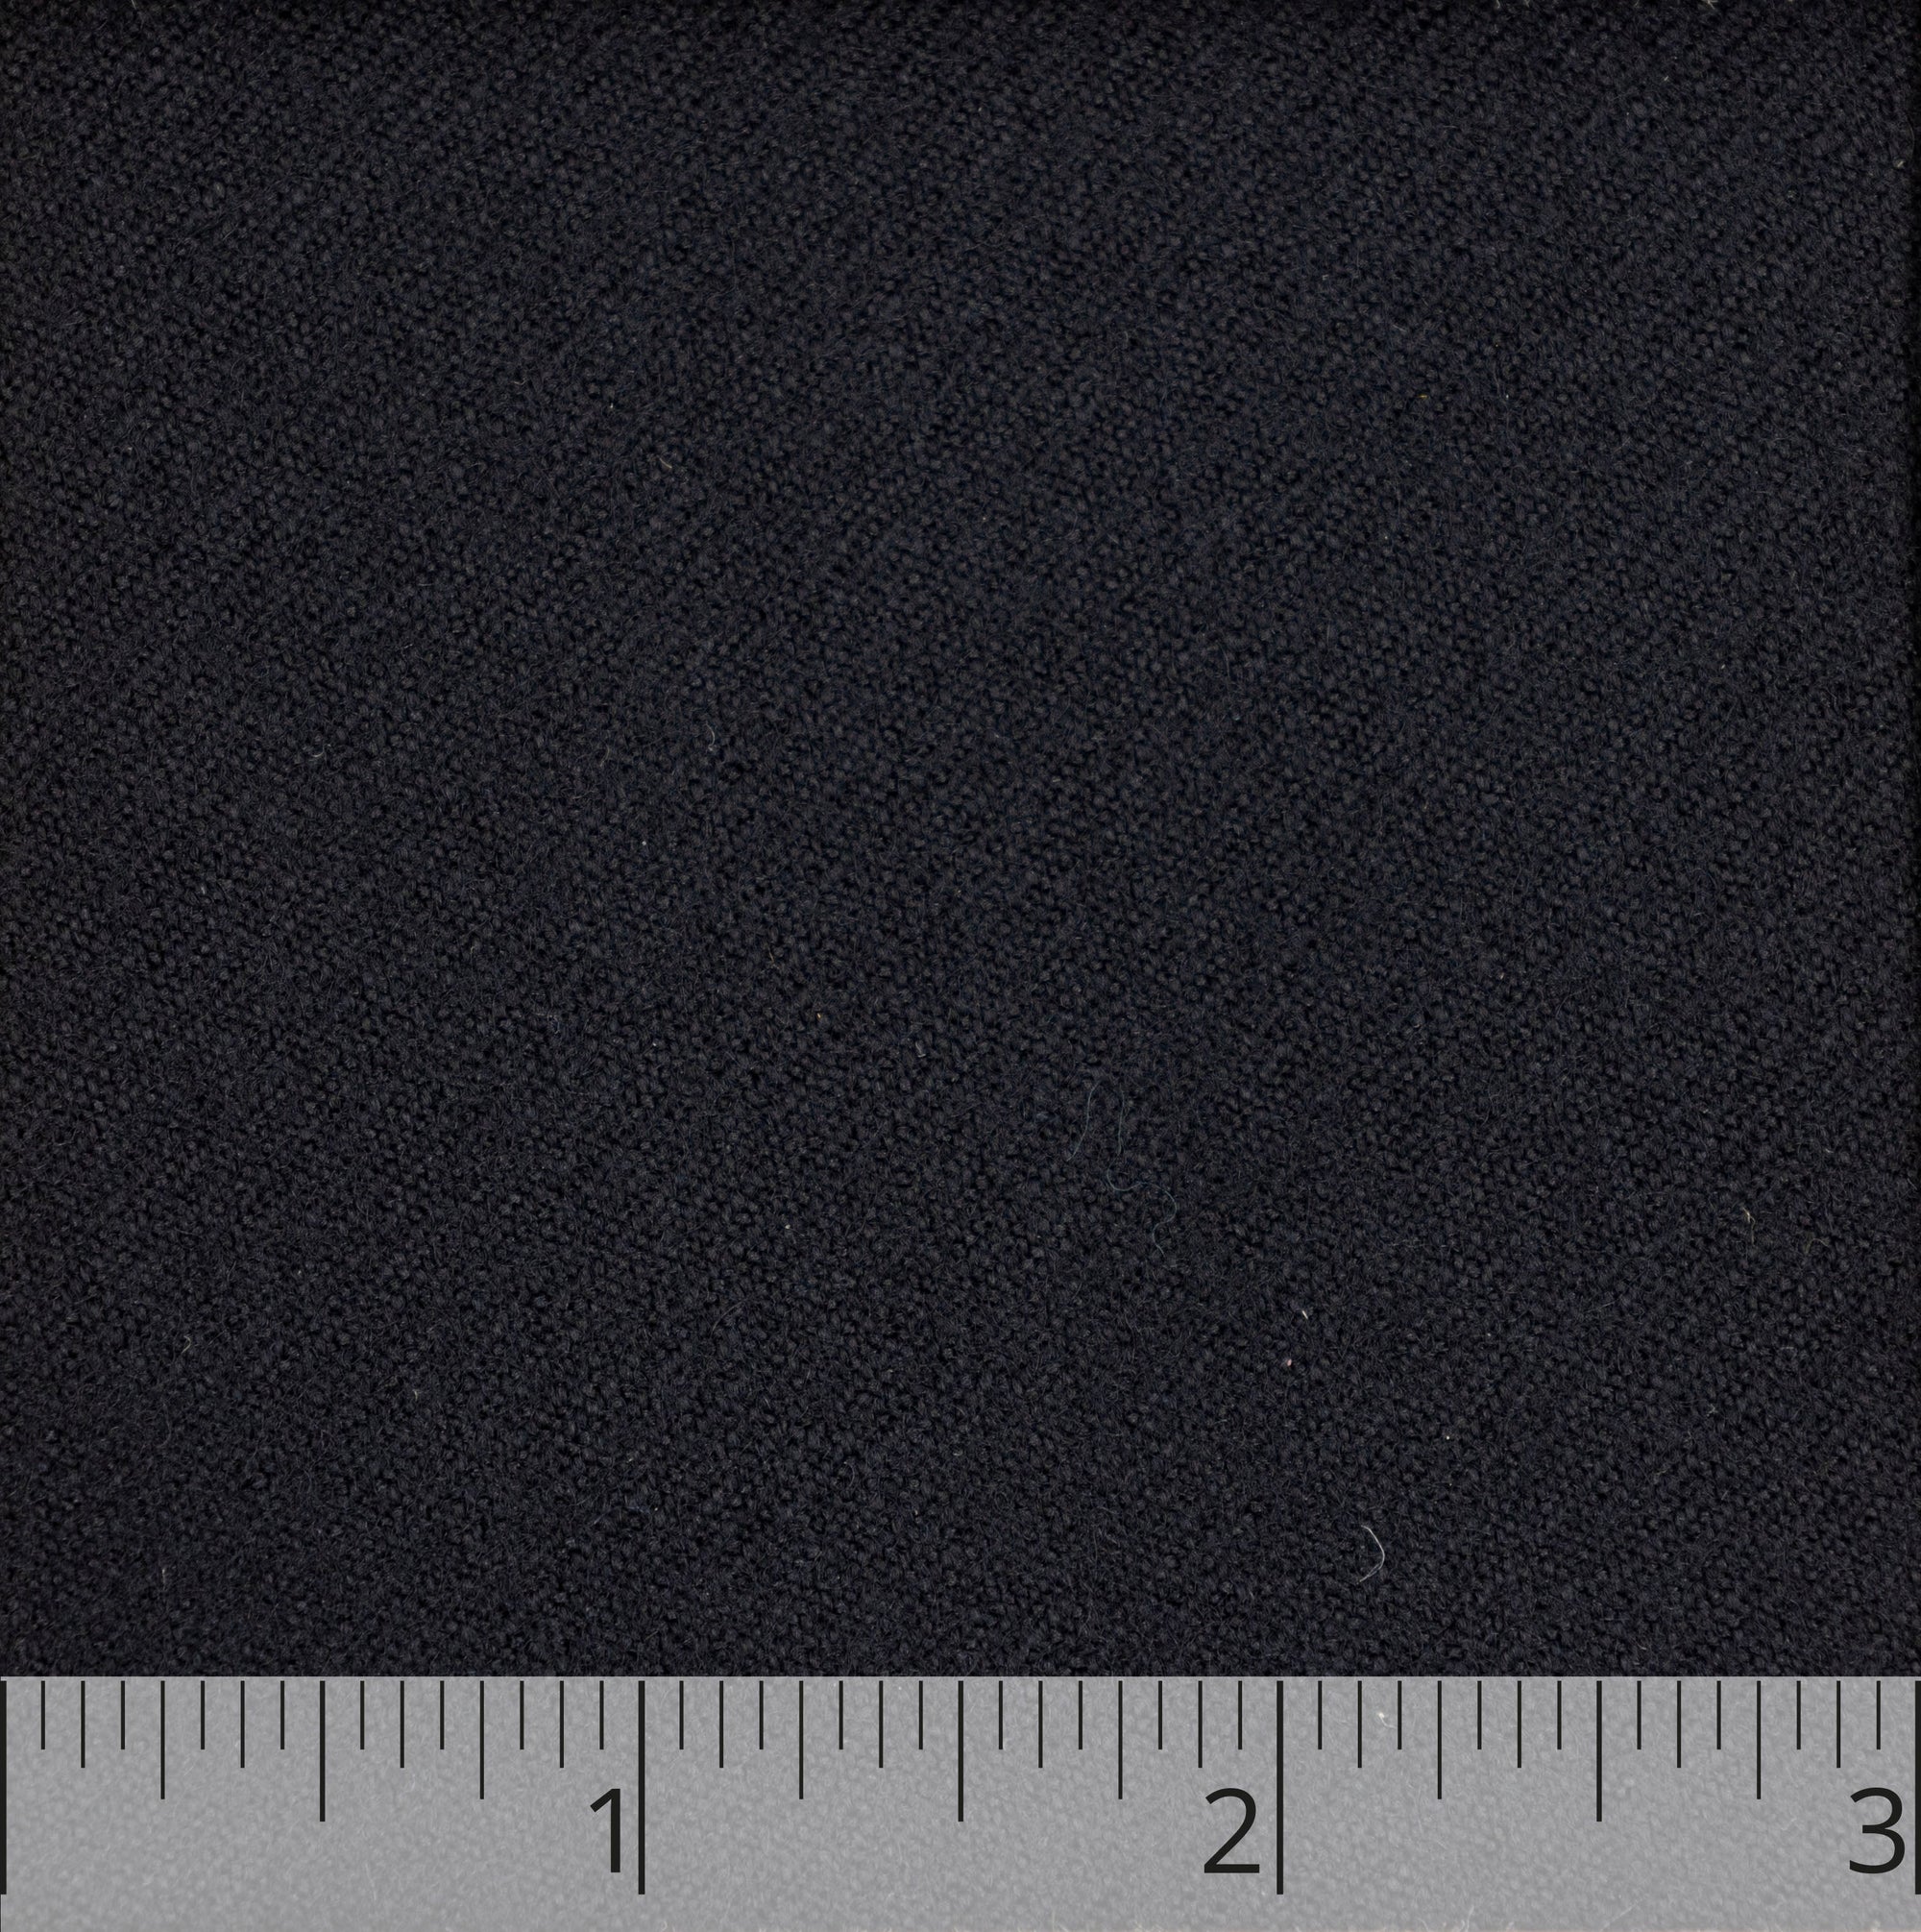 Black Worsted Wool Lasting - $18.00 yd. - Burnley & Trowbridge Co.